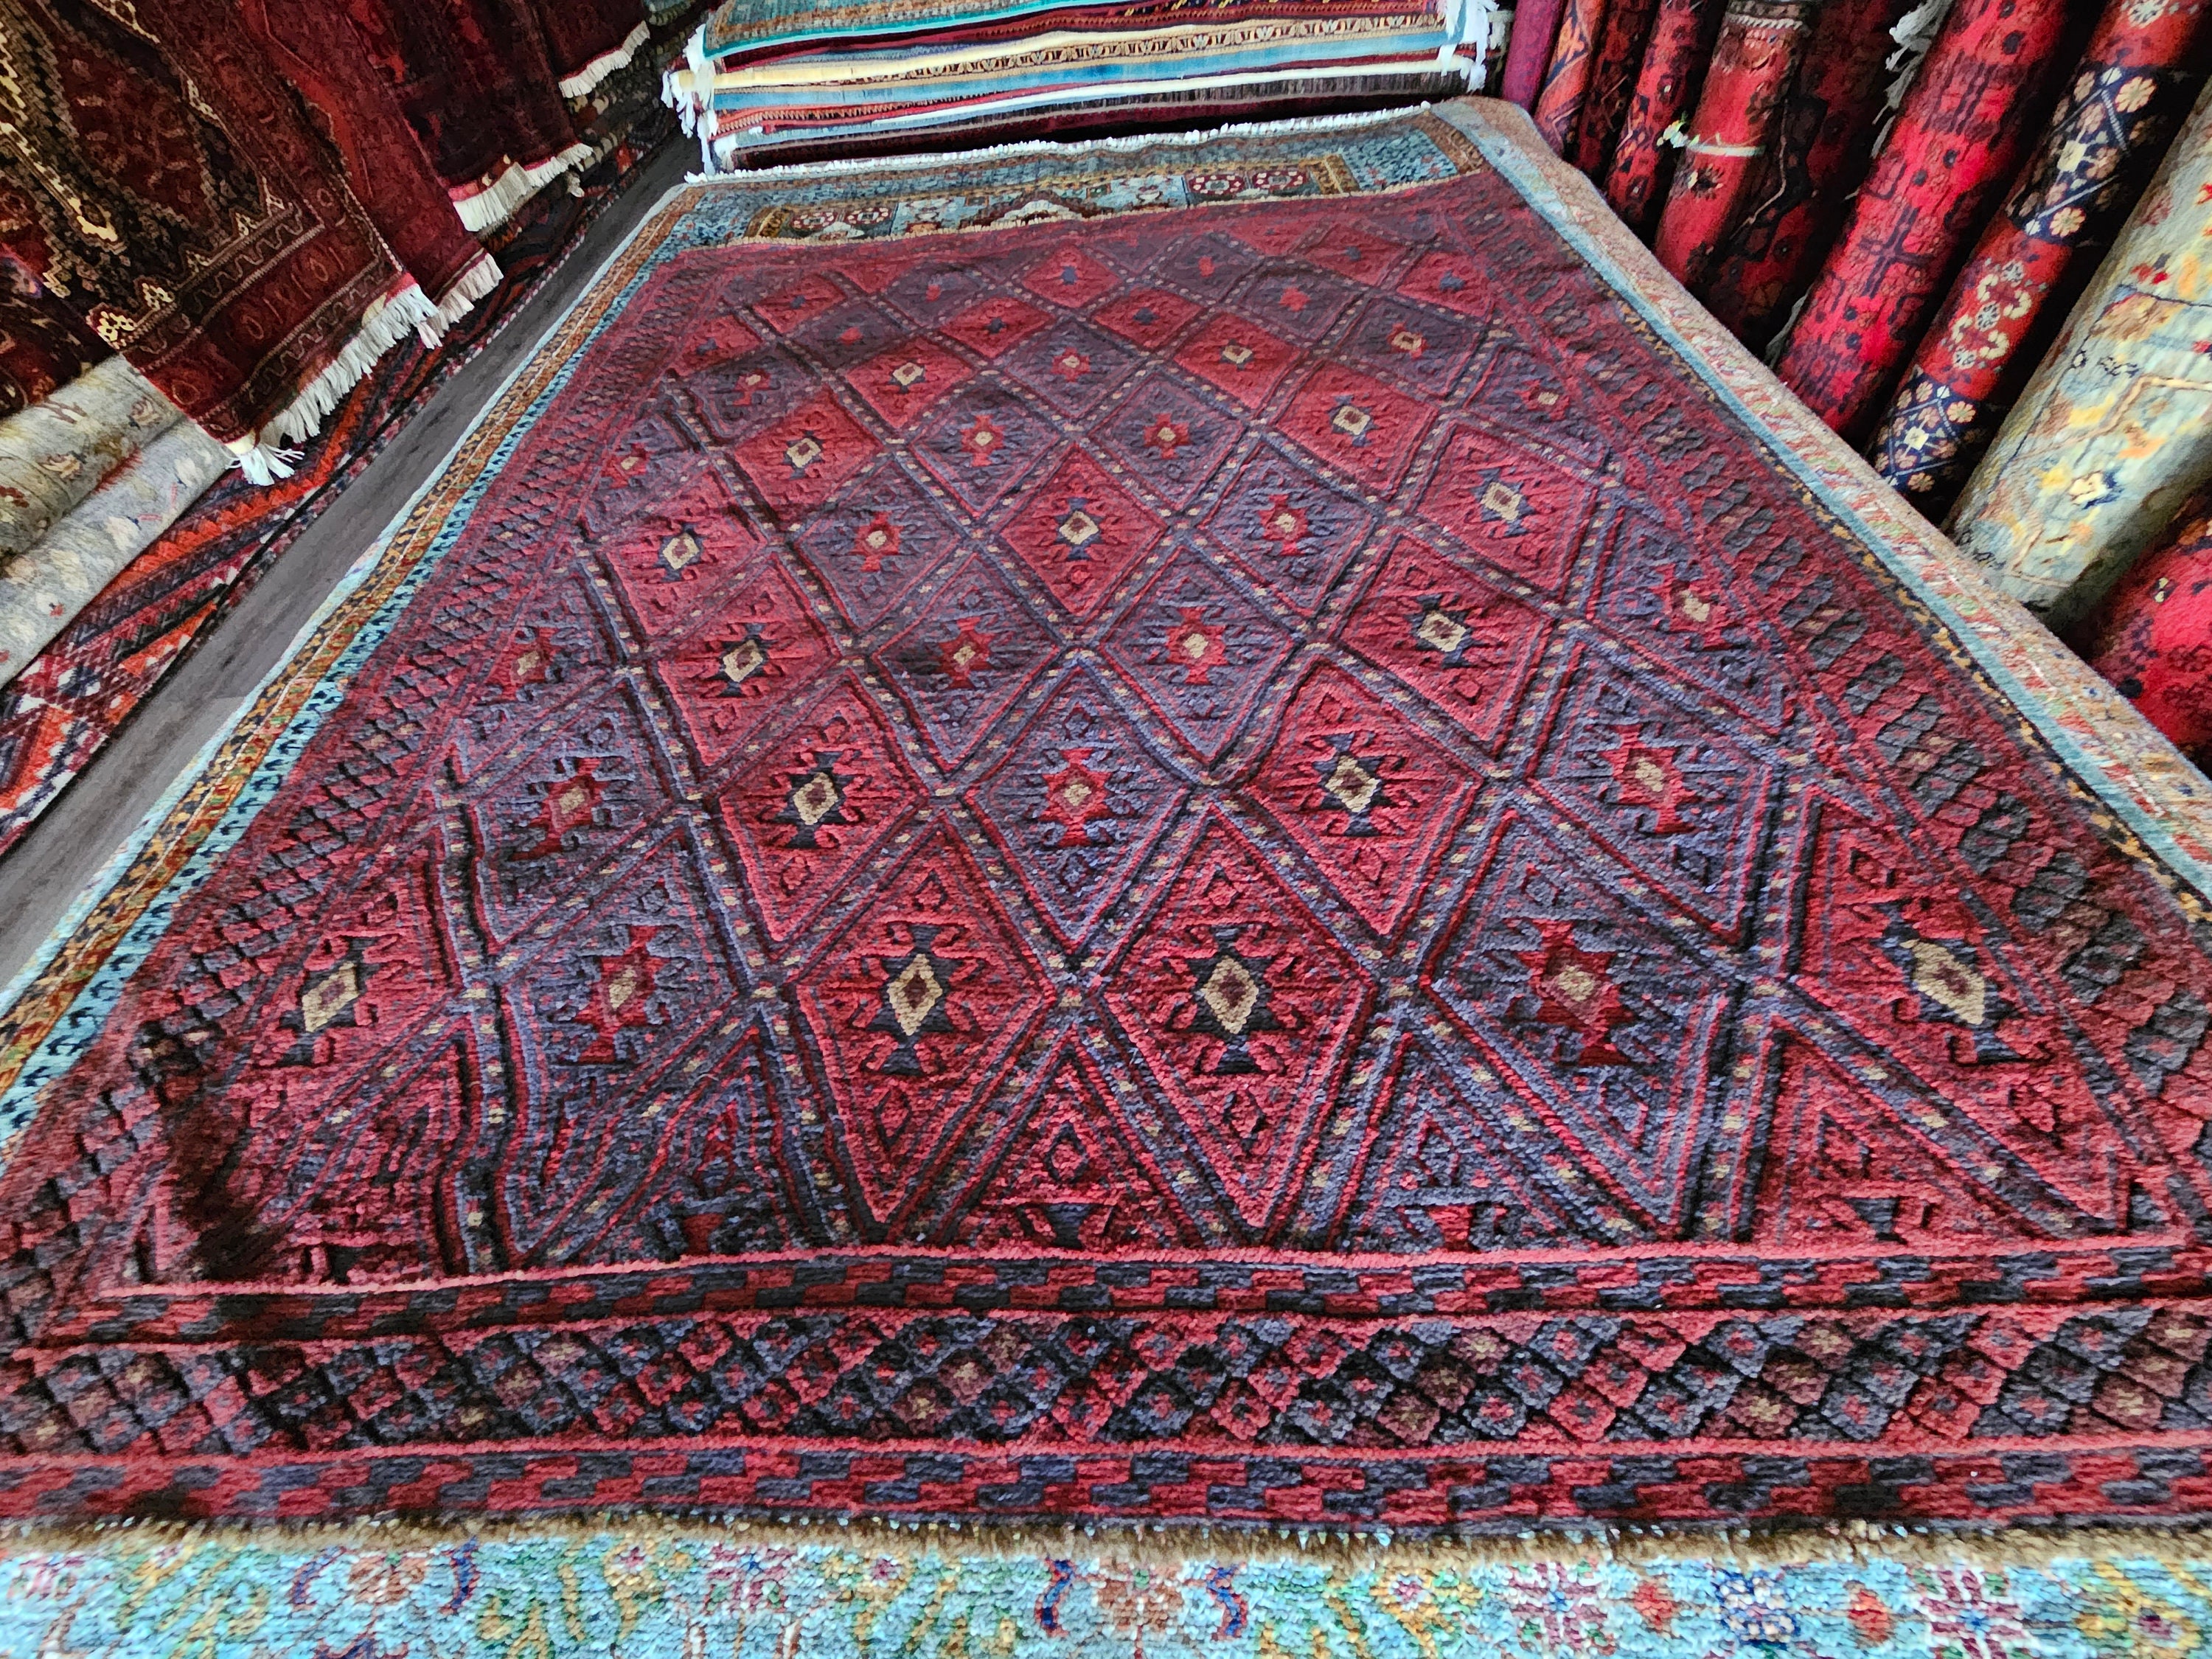 Afghan Kilim Rug, Barjasta Kilim Rugs, Rug Carpet, Area Rug Carpet, Bohemian Rug, Handmade Turkish Rug, Muted Rug, Kilim Mushwani, sumac rug